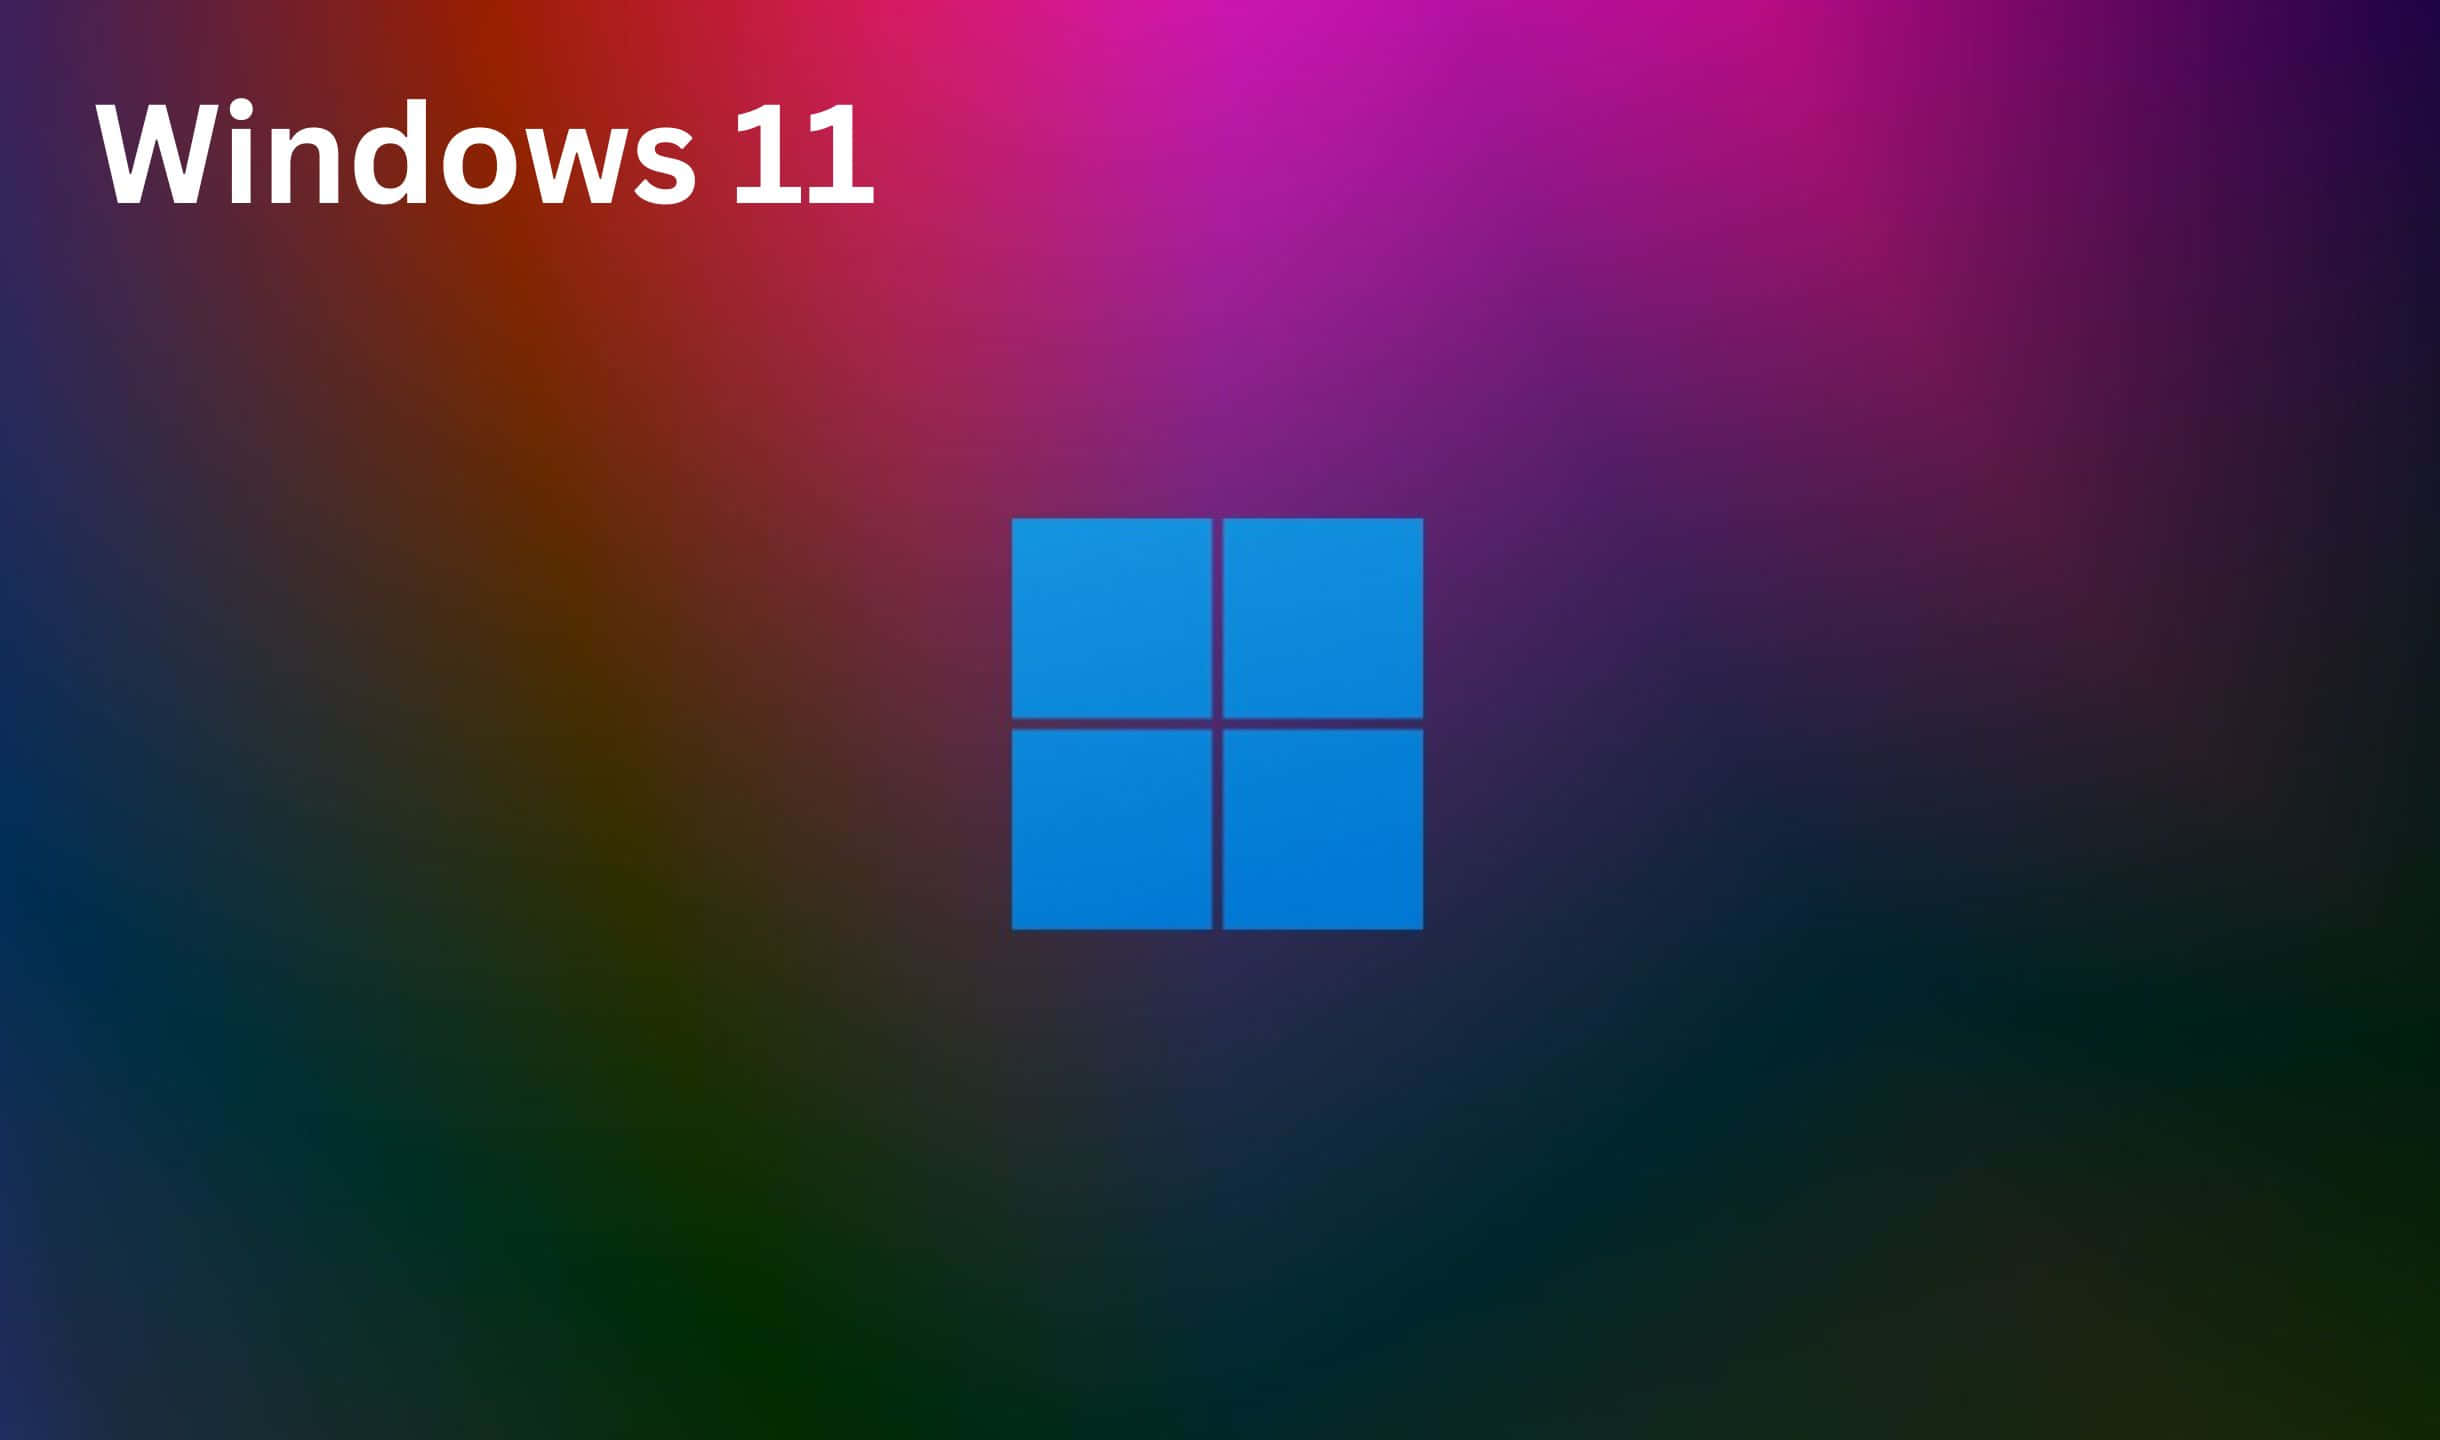 Logotipode Windows 10 Sobre Un Fondo Colorido.